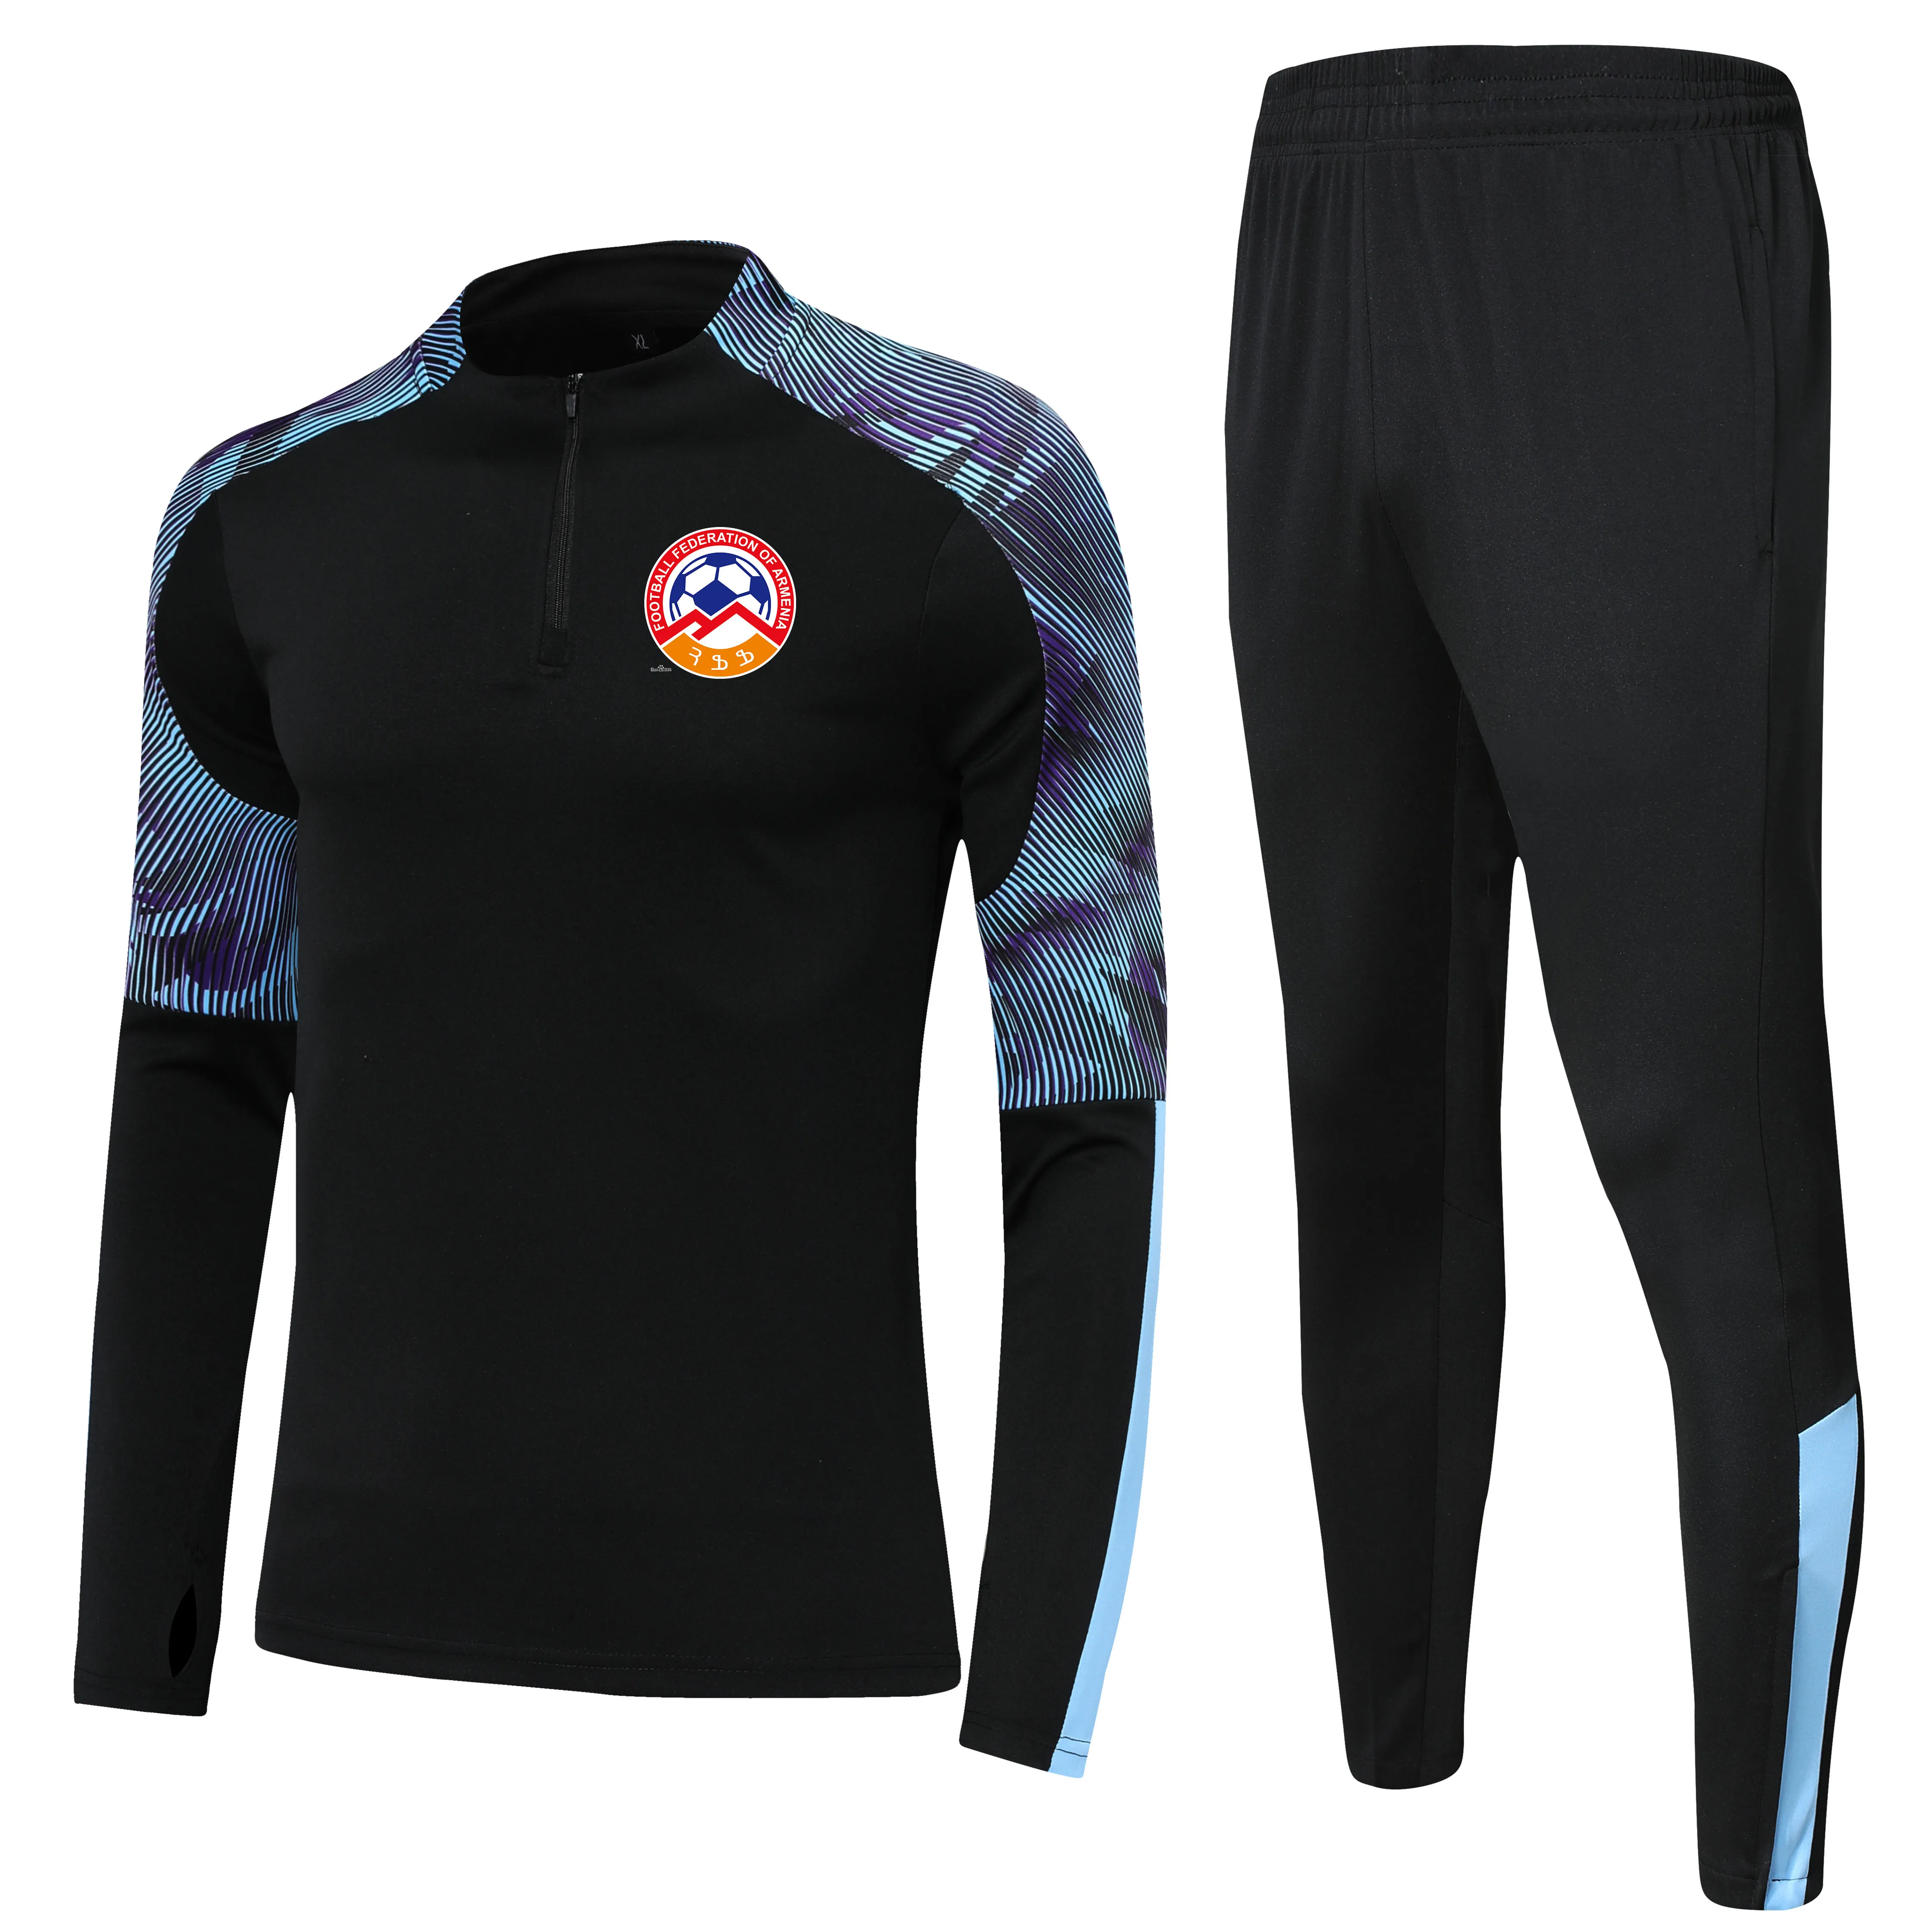 Ermenistan Ulusal Futbol Takımı Çocuk Boyutu 4xs ila 2xl Runsuits Sets Erkek Açık Mekan Takımları Ev Kitleri Ceket Pantolon Spor Giyim Hi233A